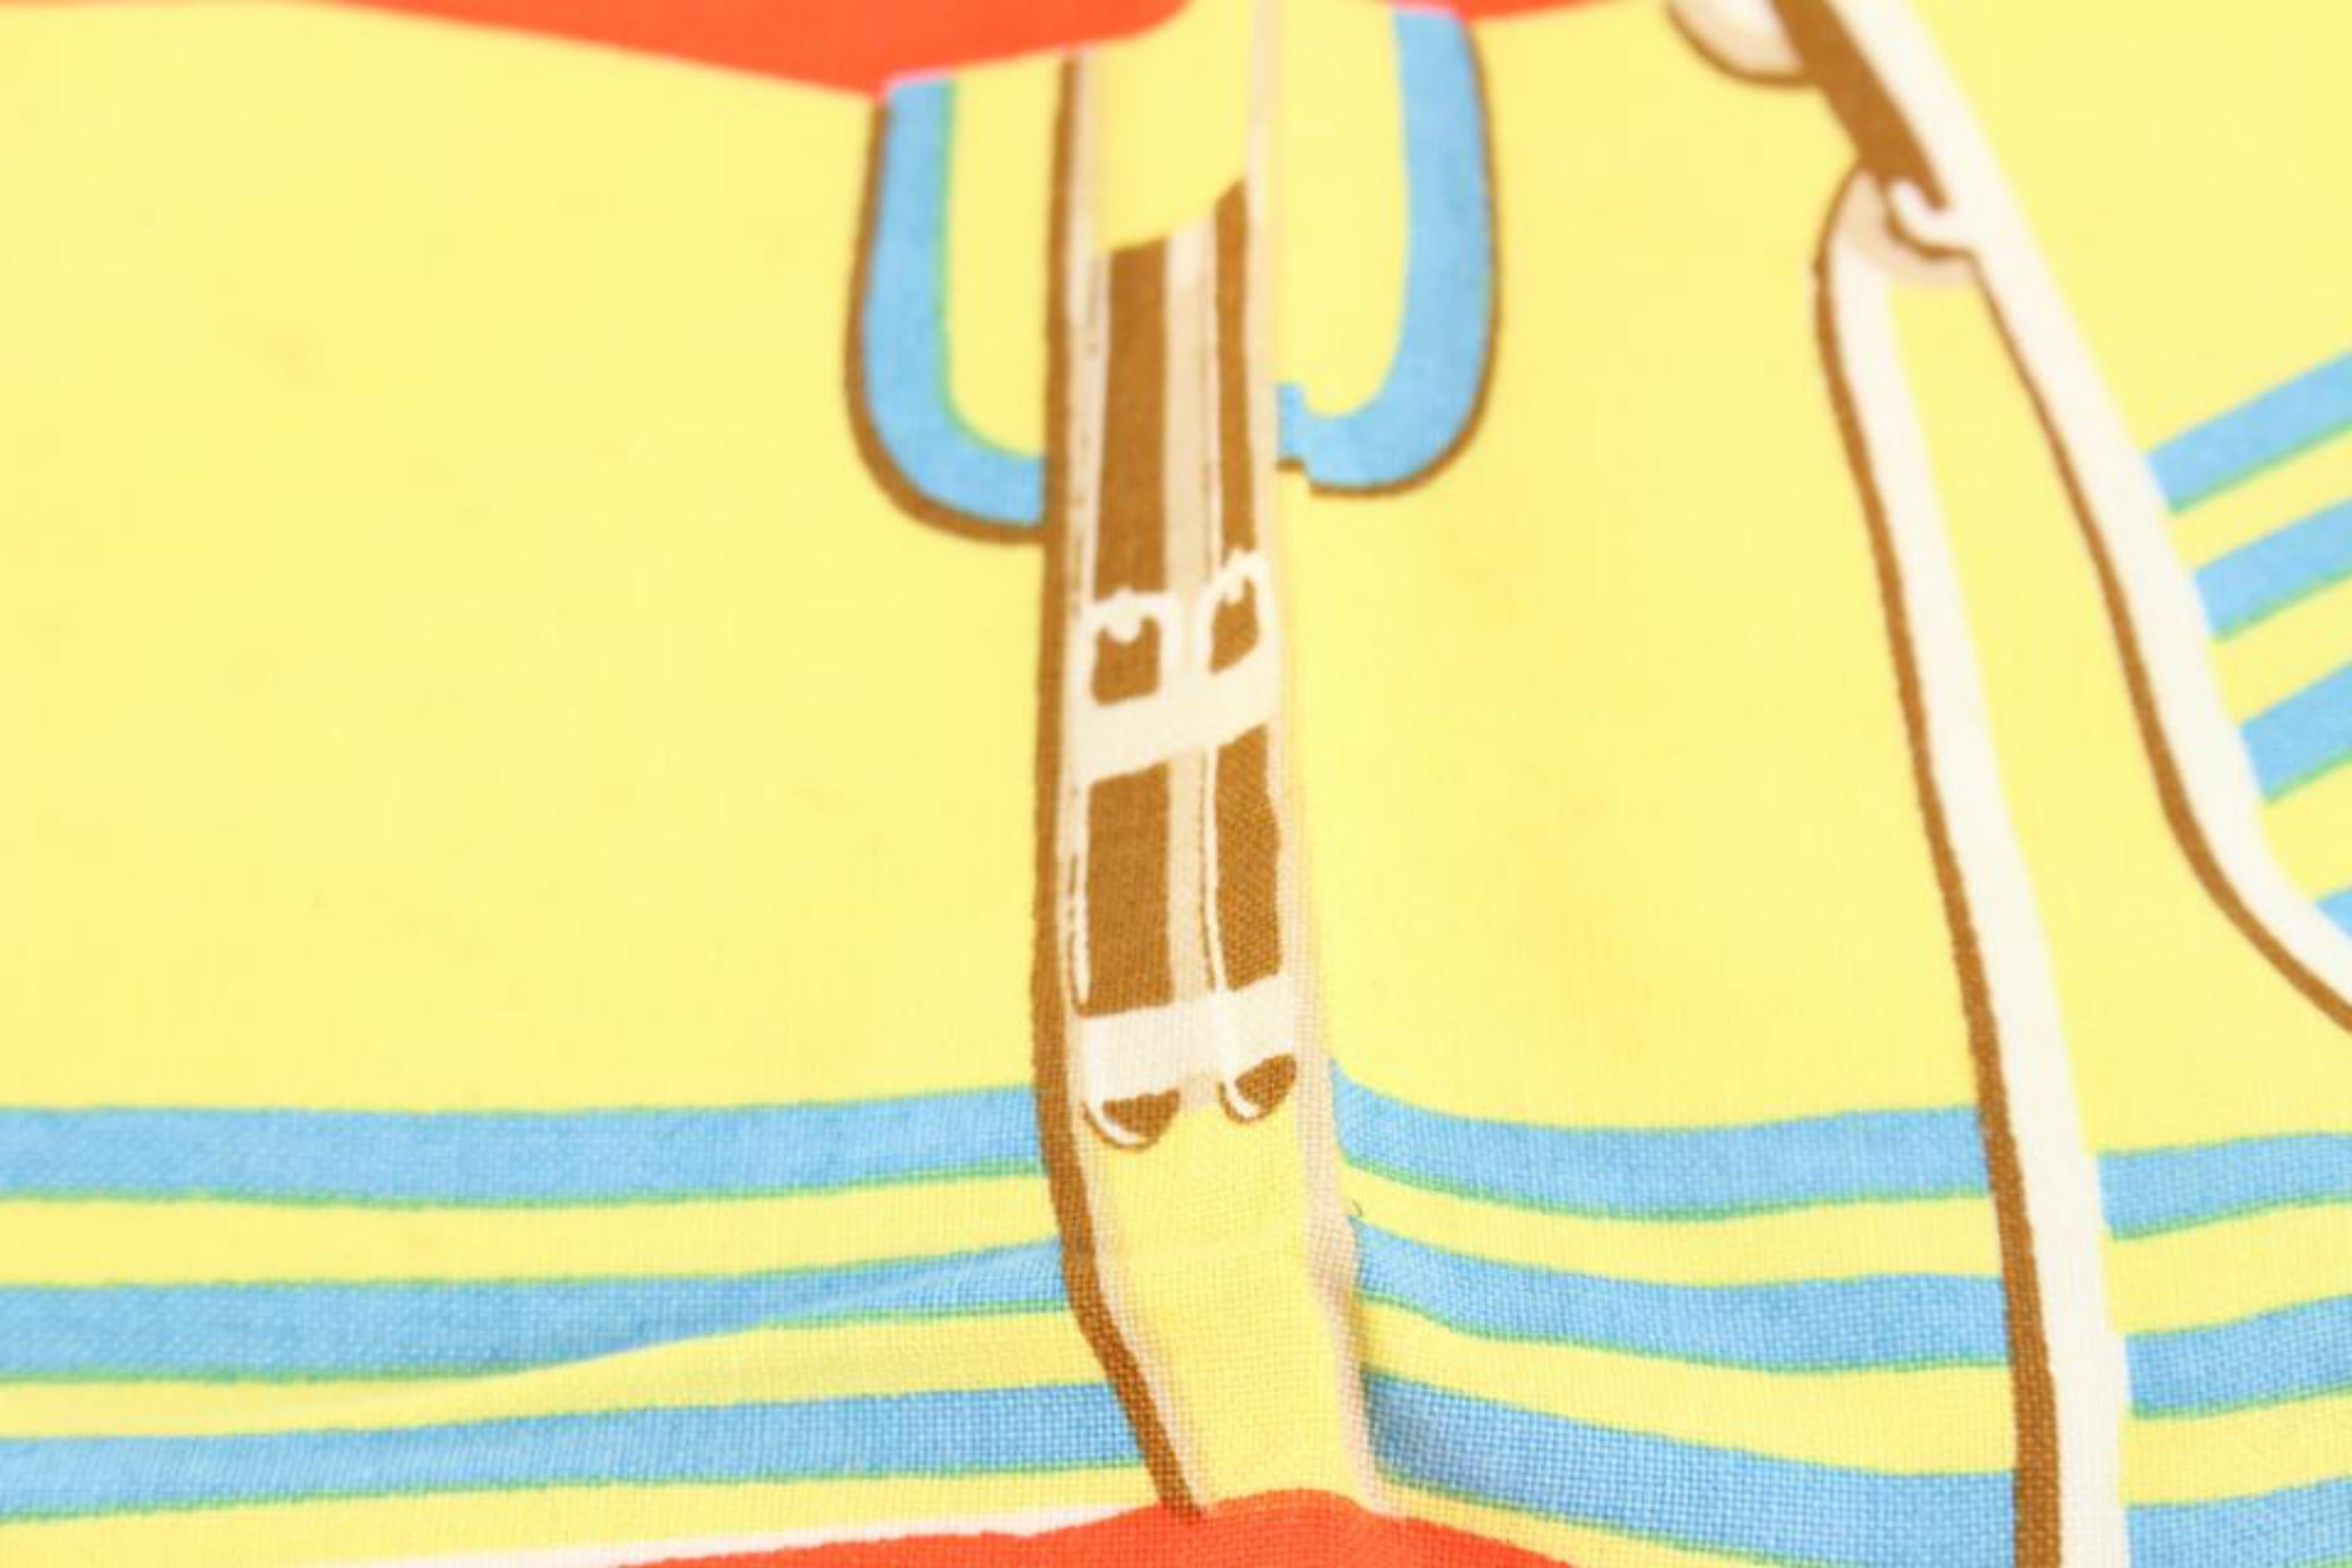 Hermès - Napperon en lin avec motif cheval 1224h21
Fabriqué en : France
Mesures : Longueur :  largeur de 19